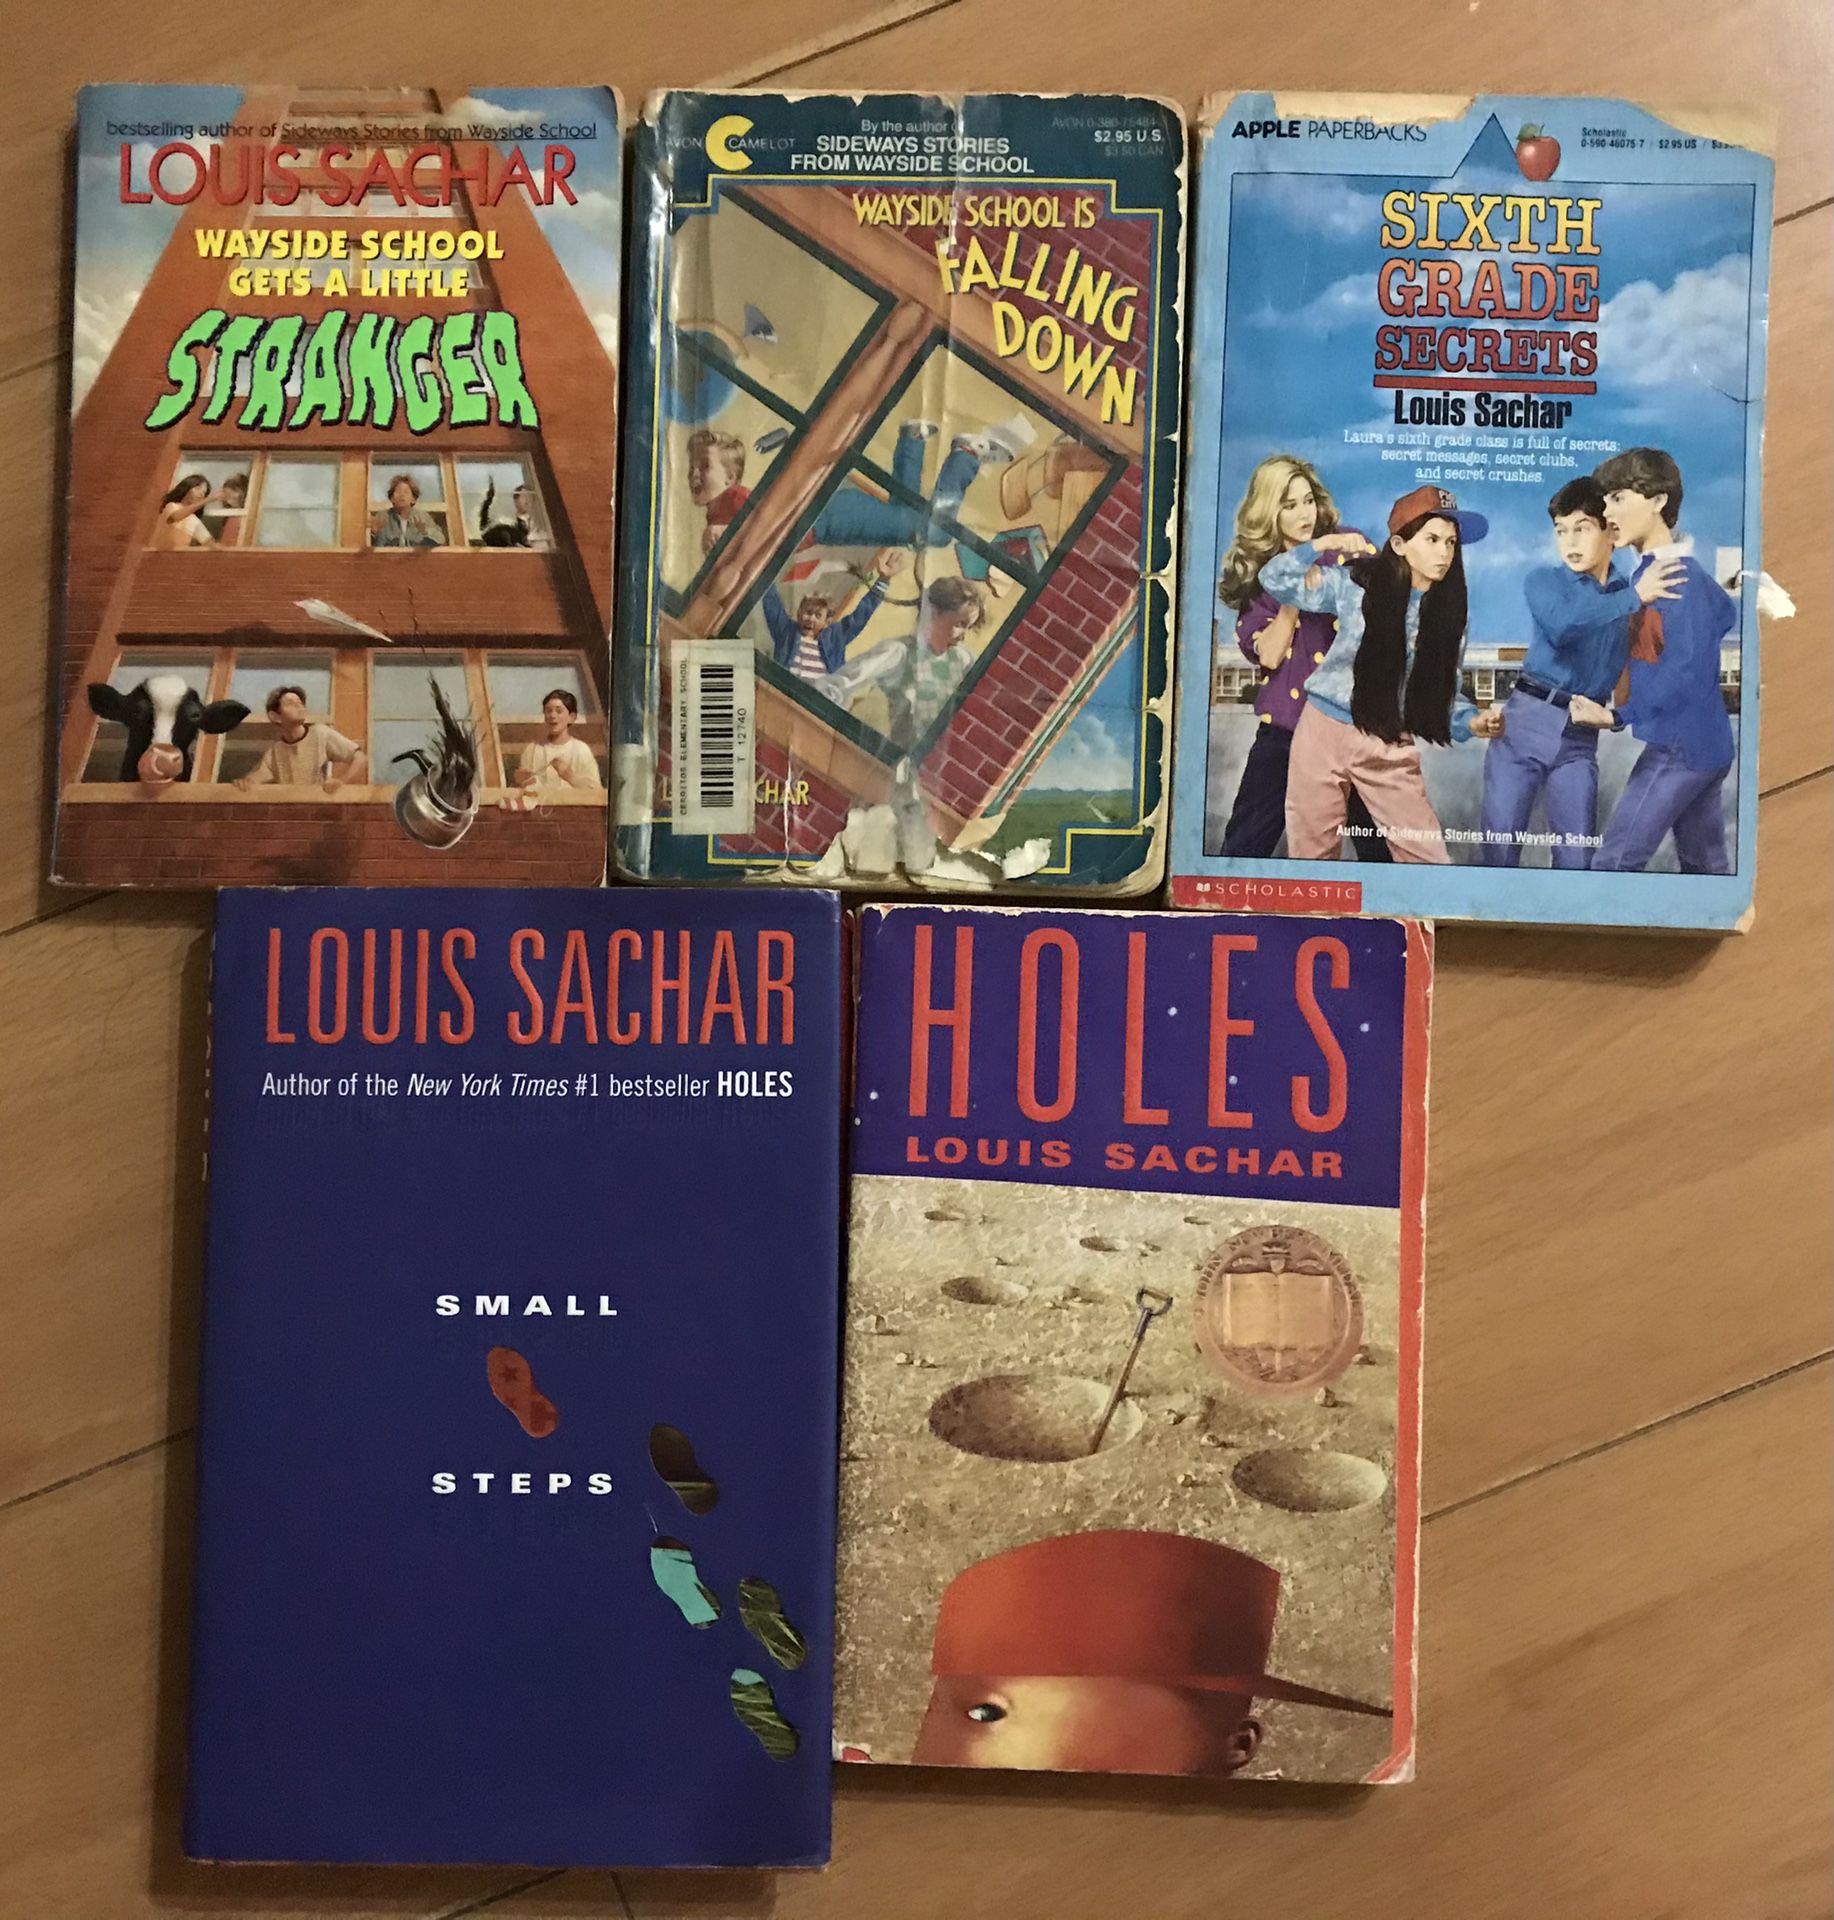 Books by Louis Sachar - 6 books total